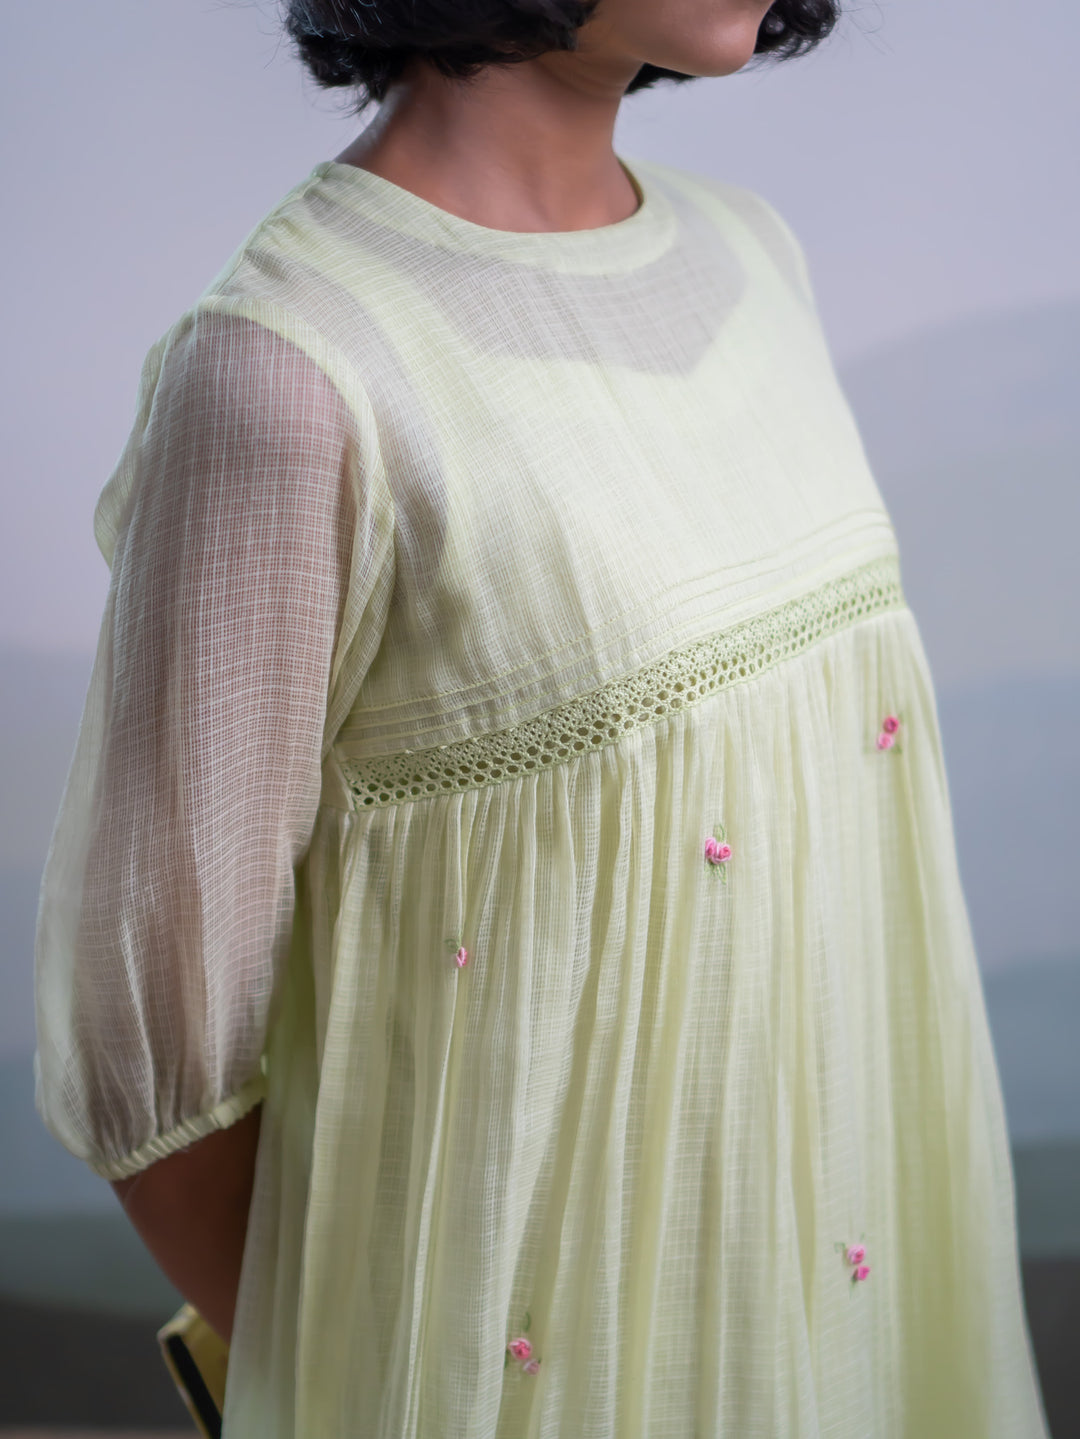 Cattleya Dress